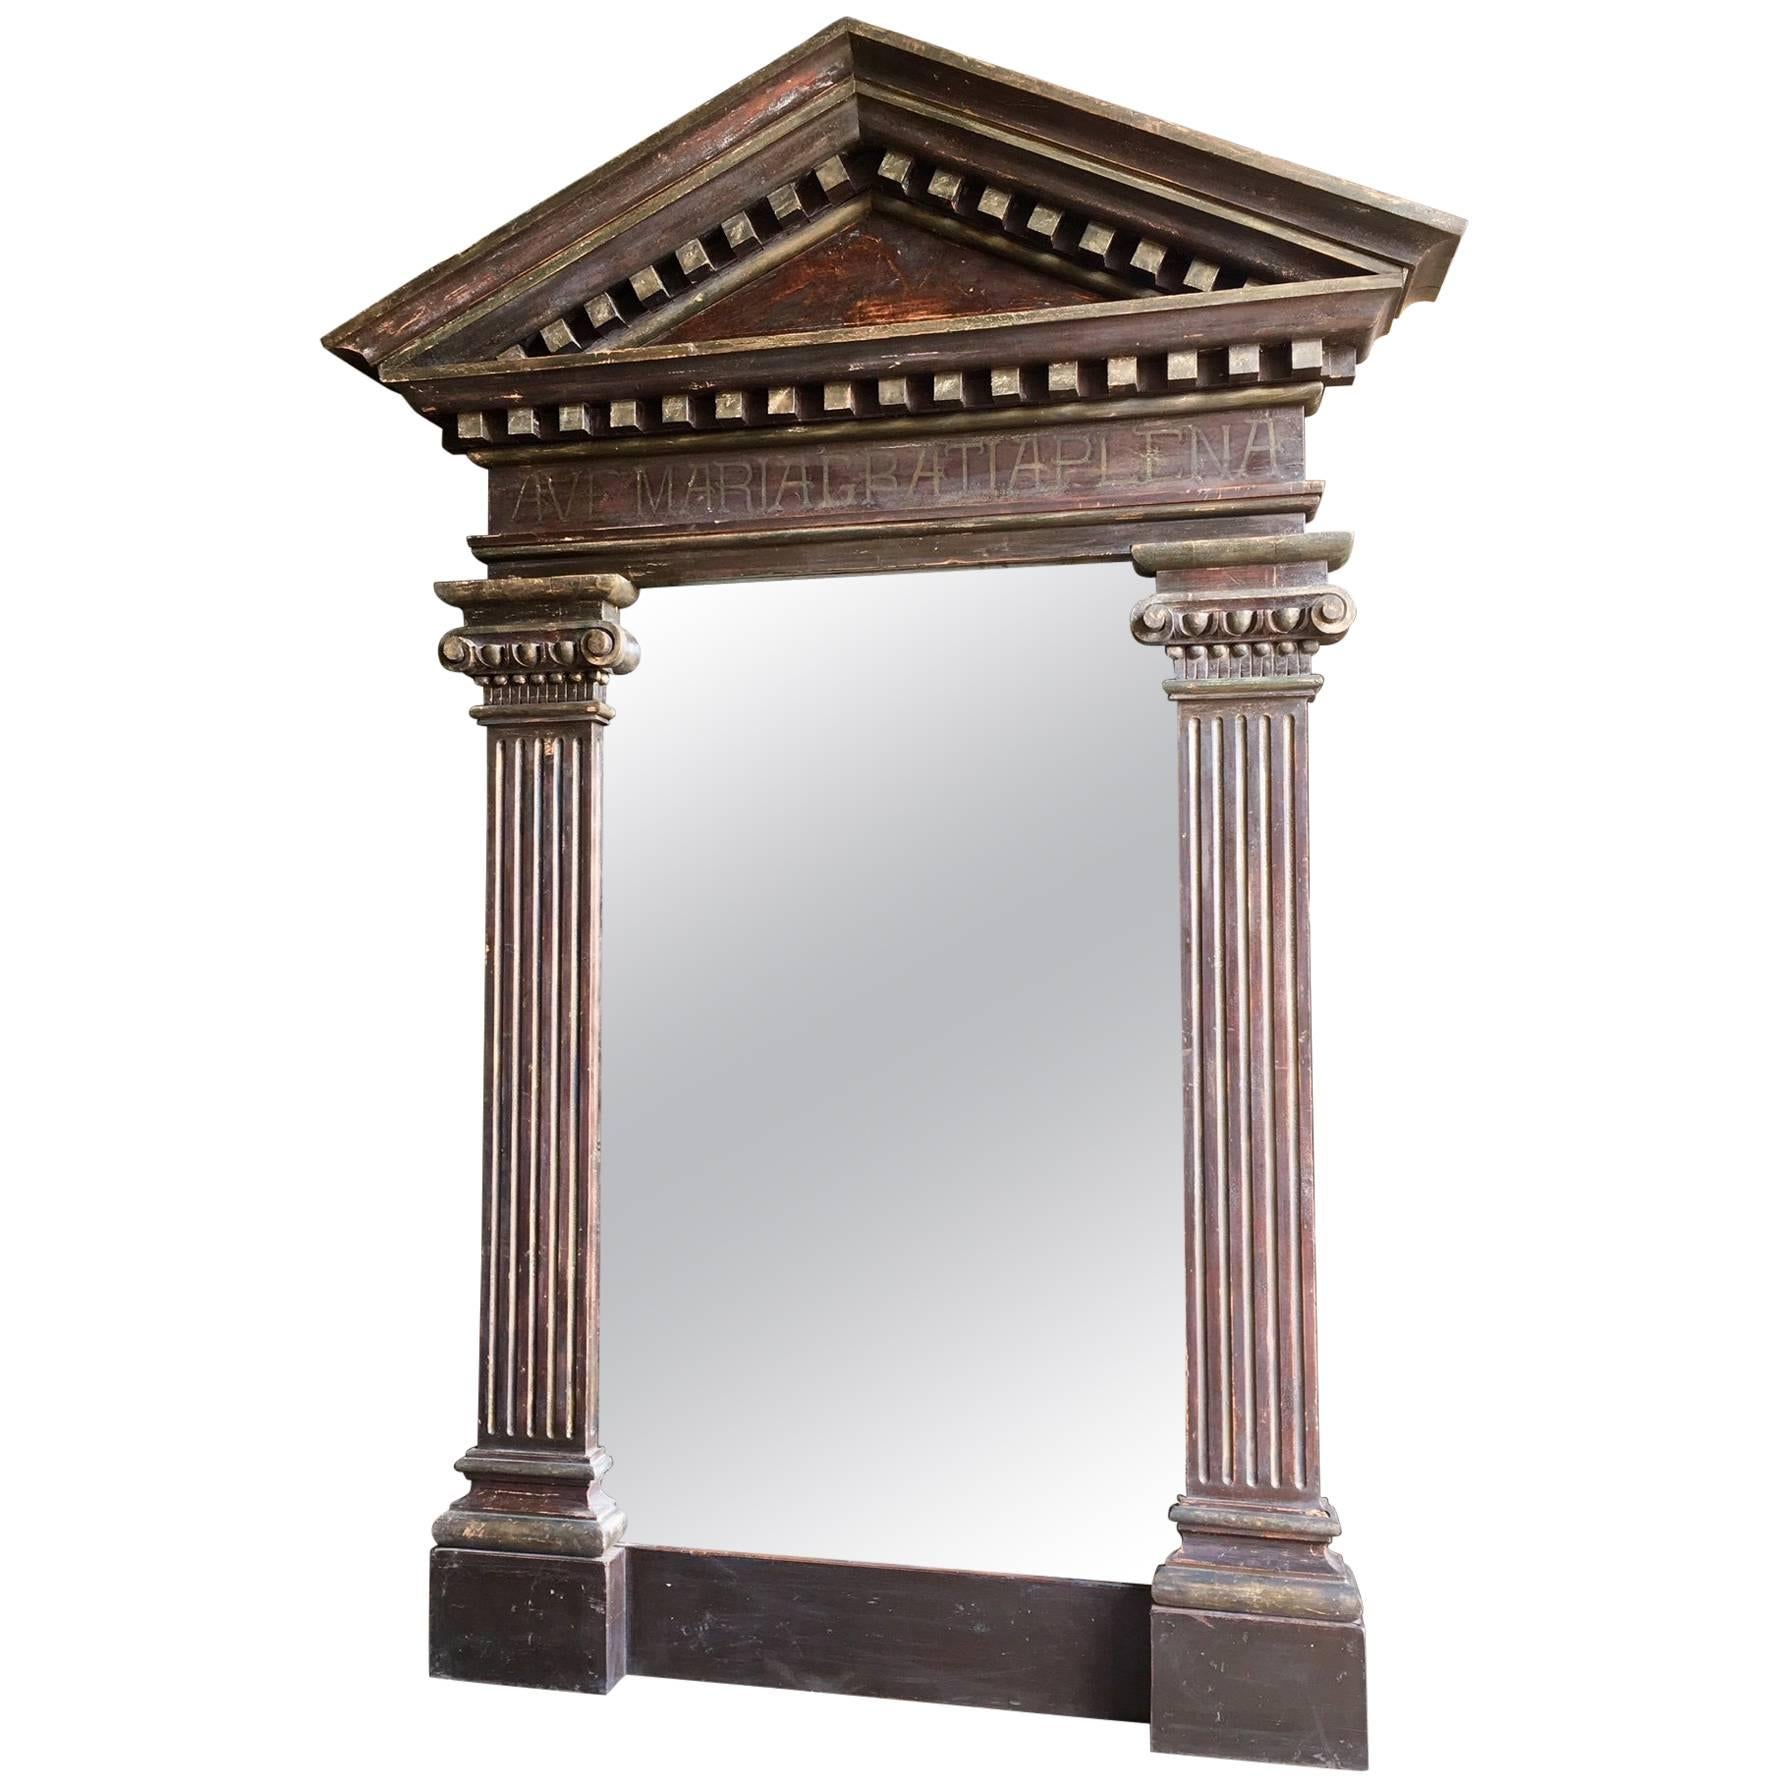 Großer, großer Spiegel in antikem, dekorativem architektonischen Rahmen